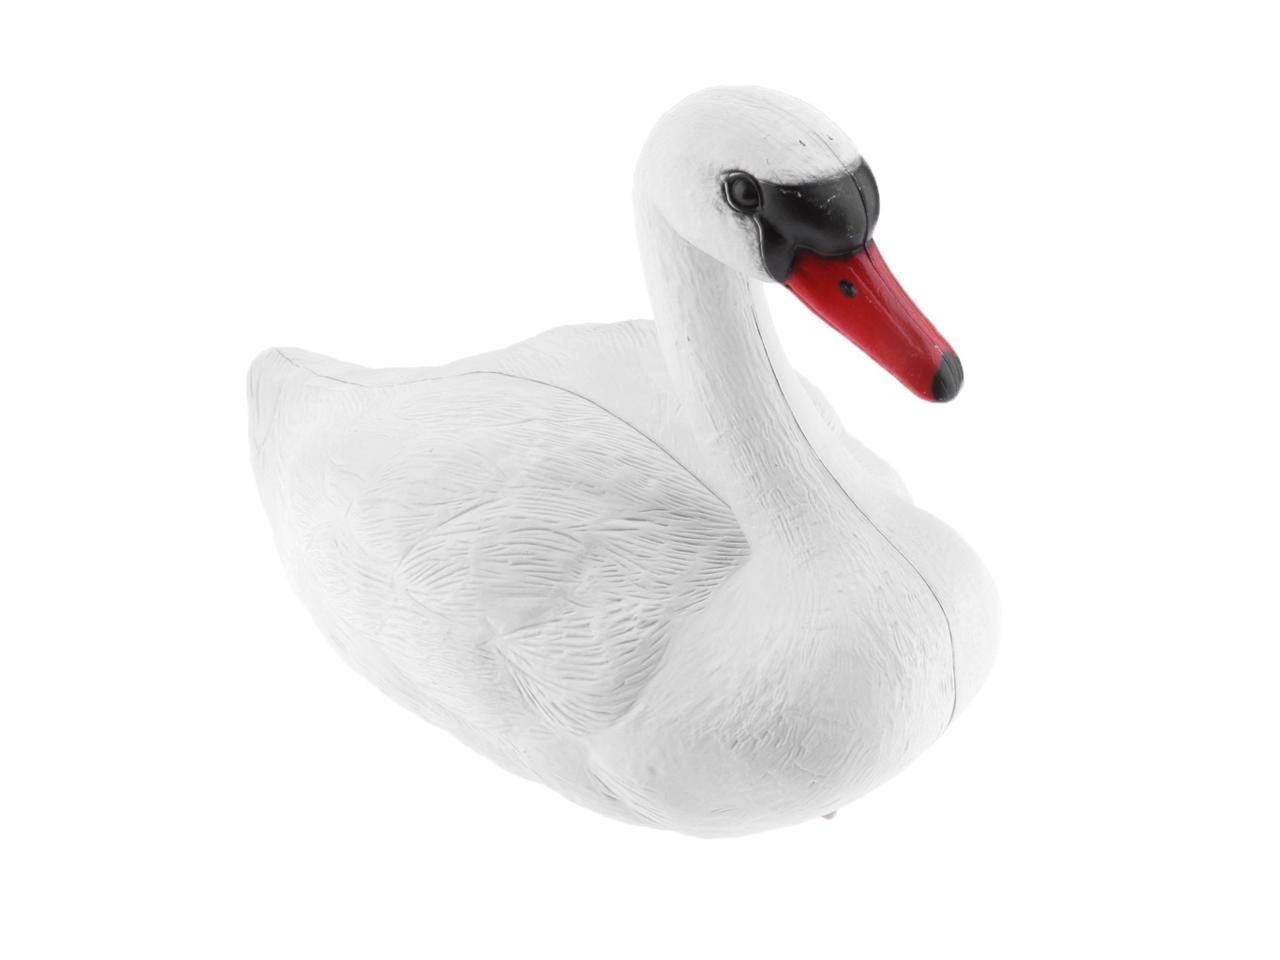 2x Plastic Swan Floating Decoy Hunting Bird Deterrent Repeller Garden Scarer